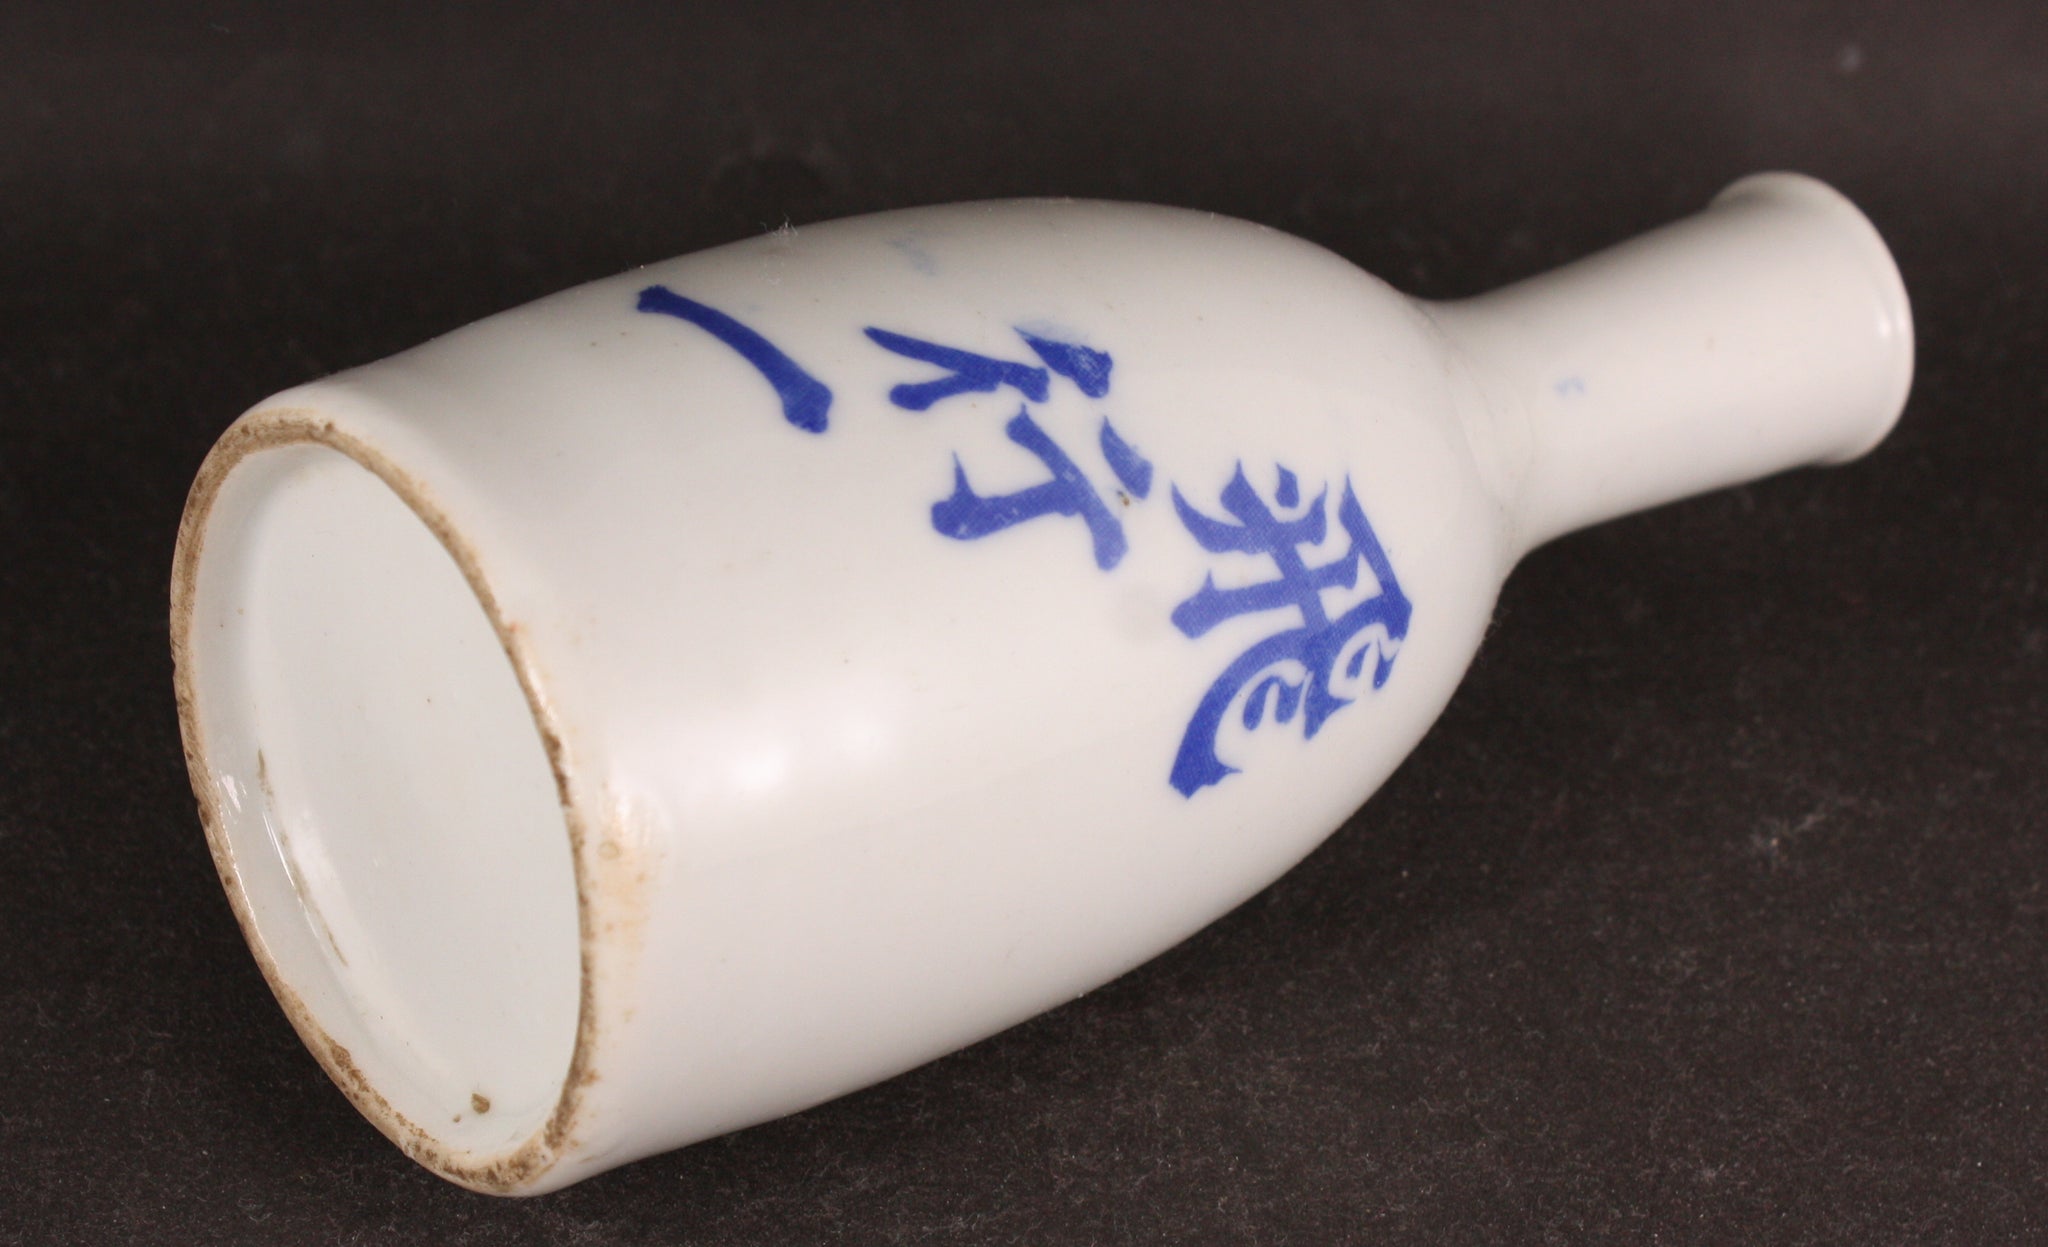 Antique Japanese Military 1st Flying Regiment Sake Shop Bottle